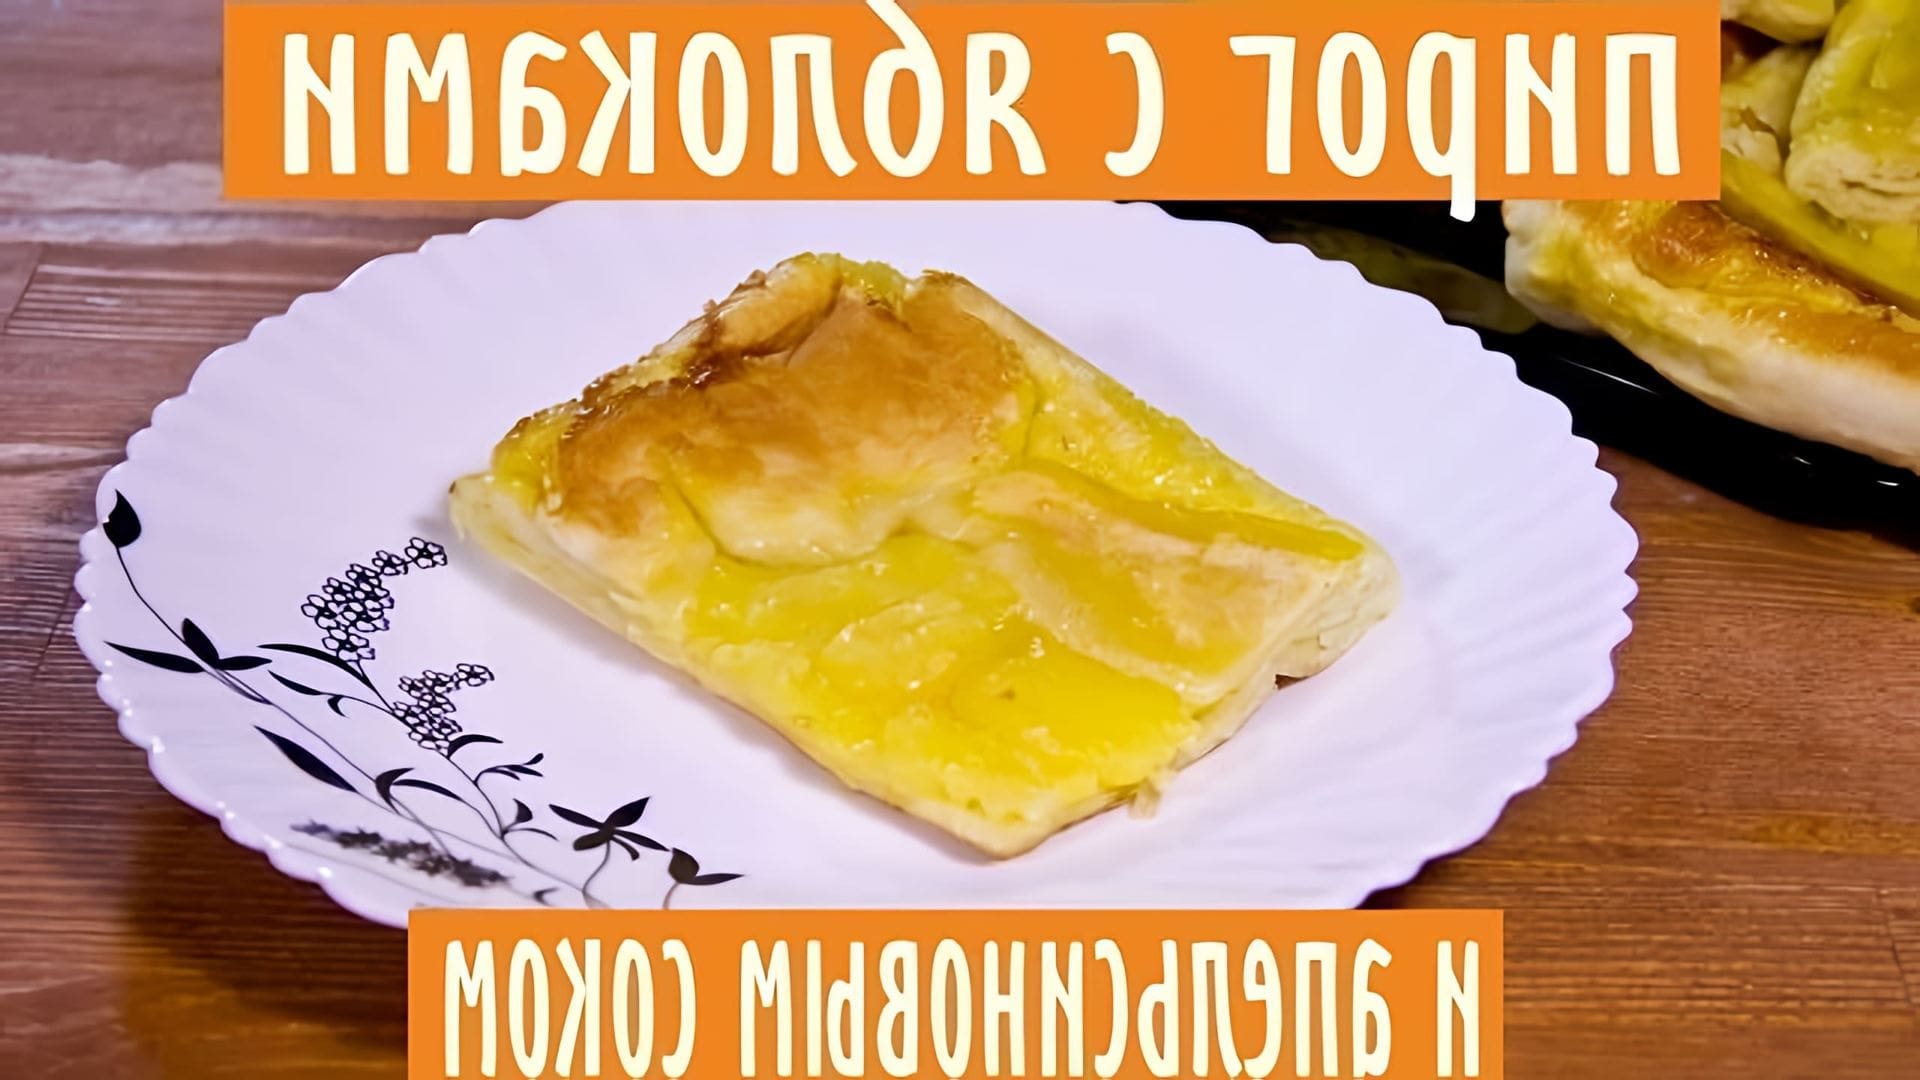 В этом видео демонстрируется рецепт приготовления очень вкусного пирога с яблоками и апельсиновым соком